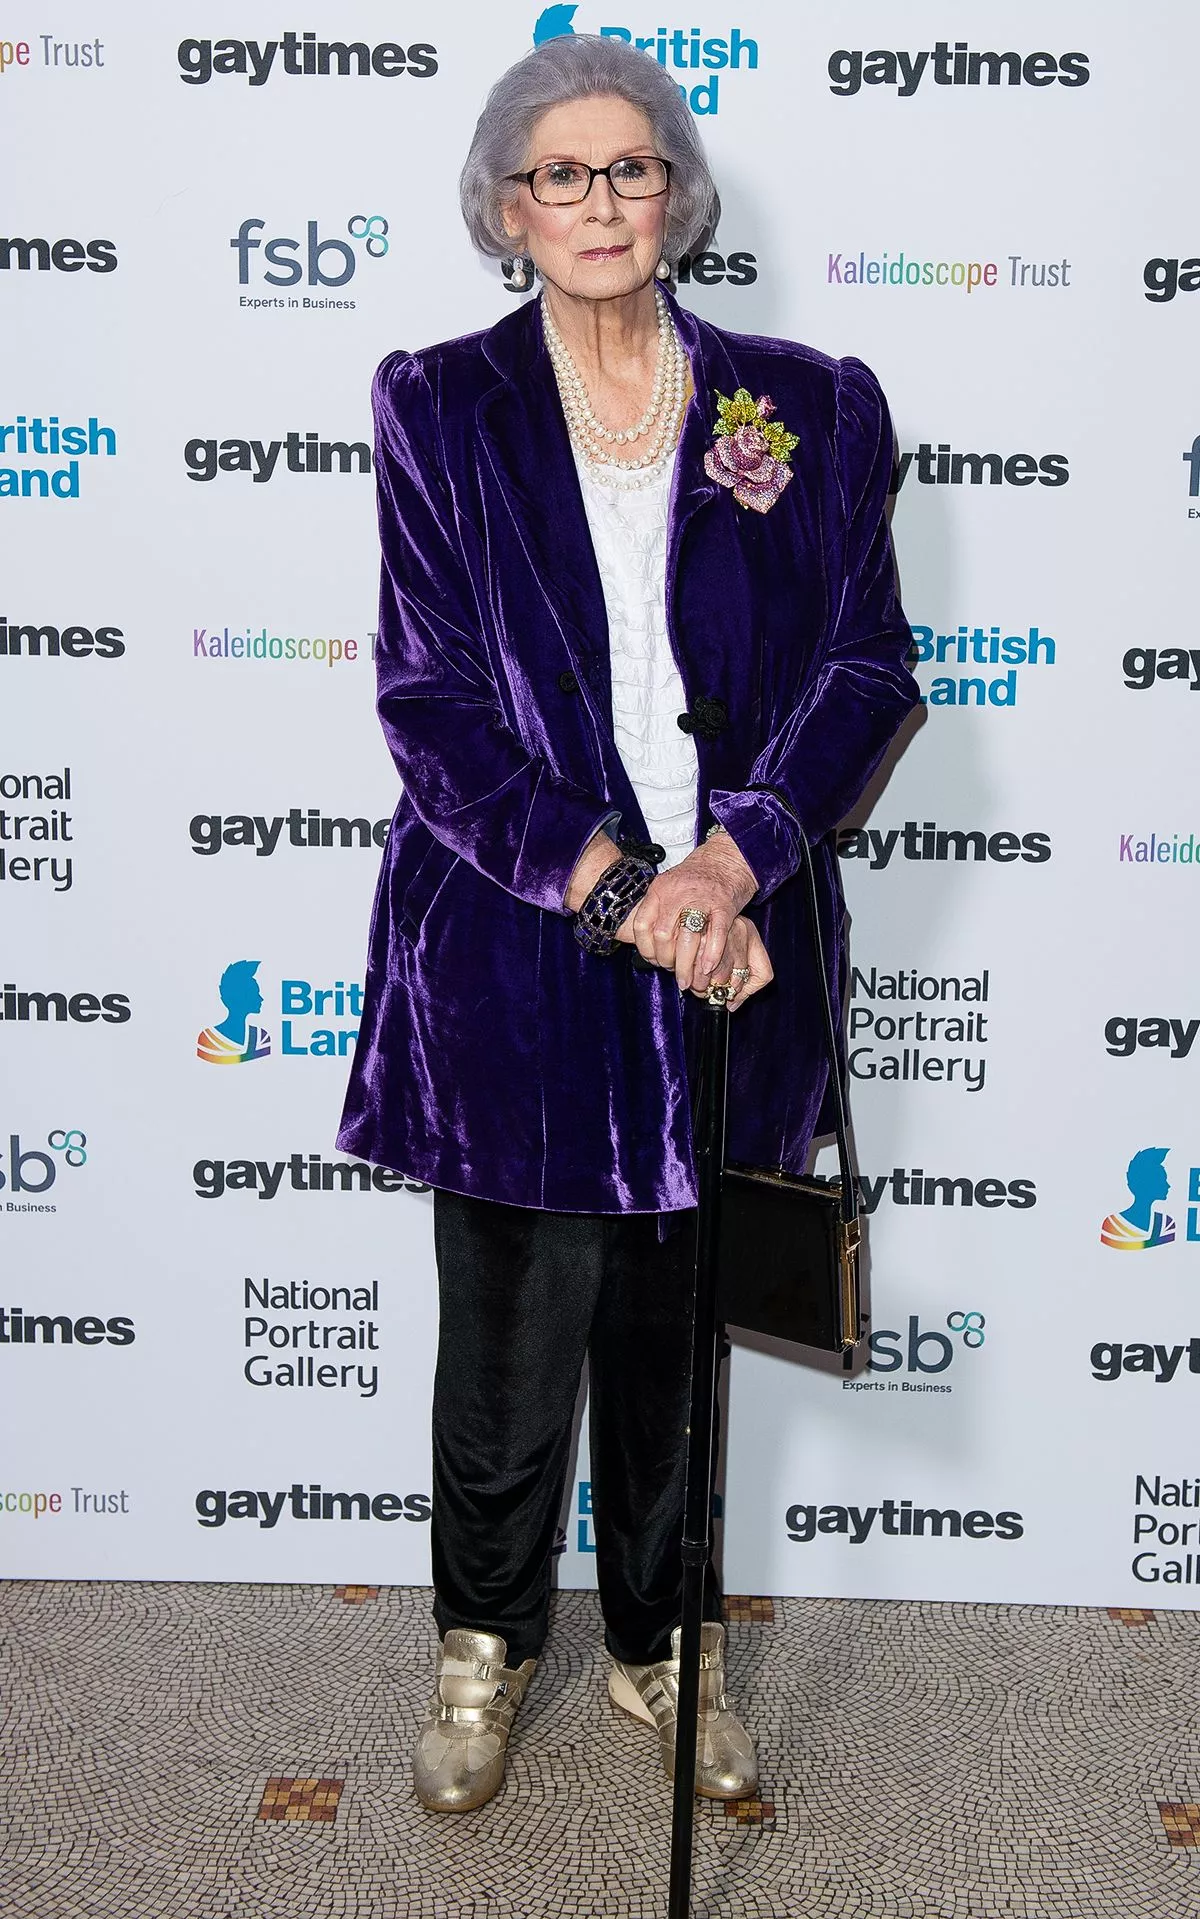 Эйприл Эшли на церемонии награждения Gay Times в Национальной портретной галерее